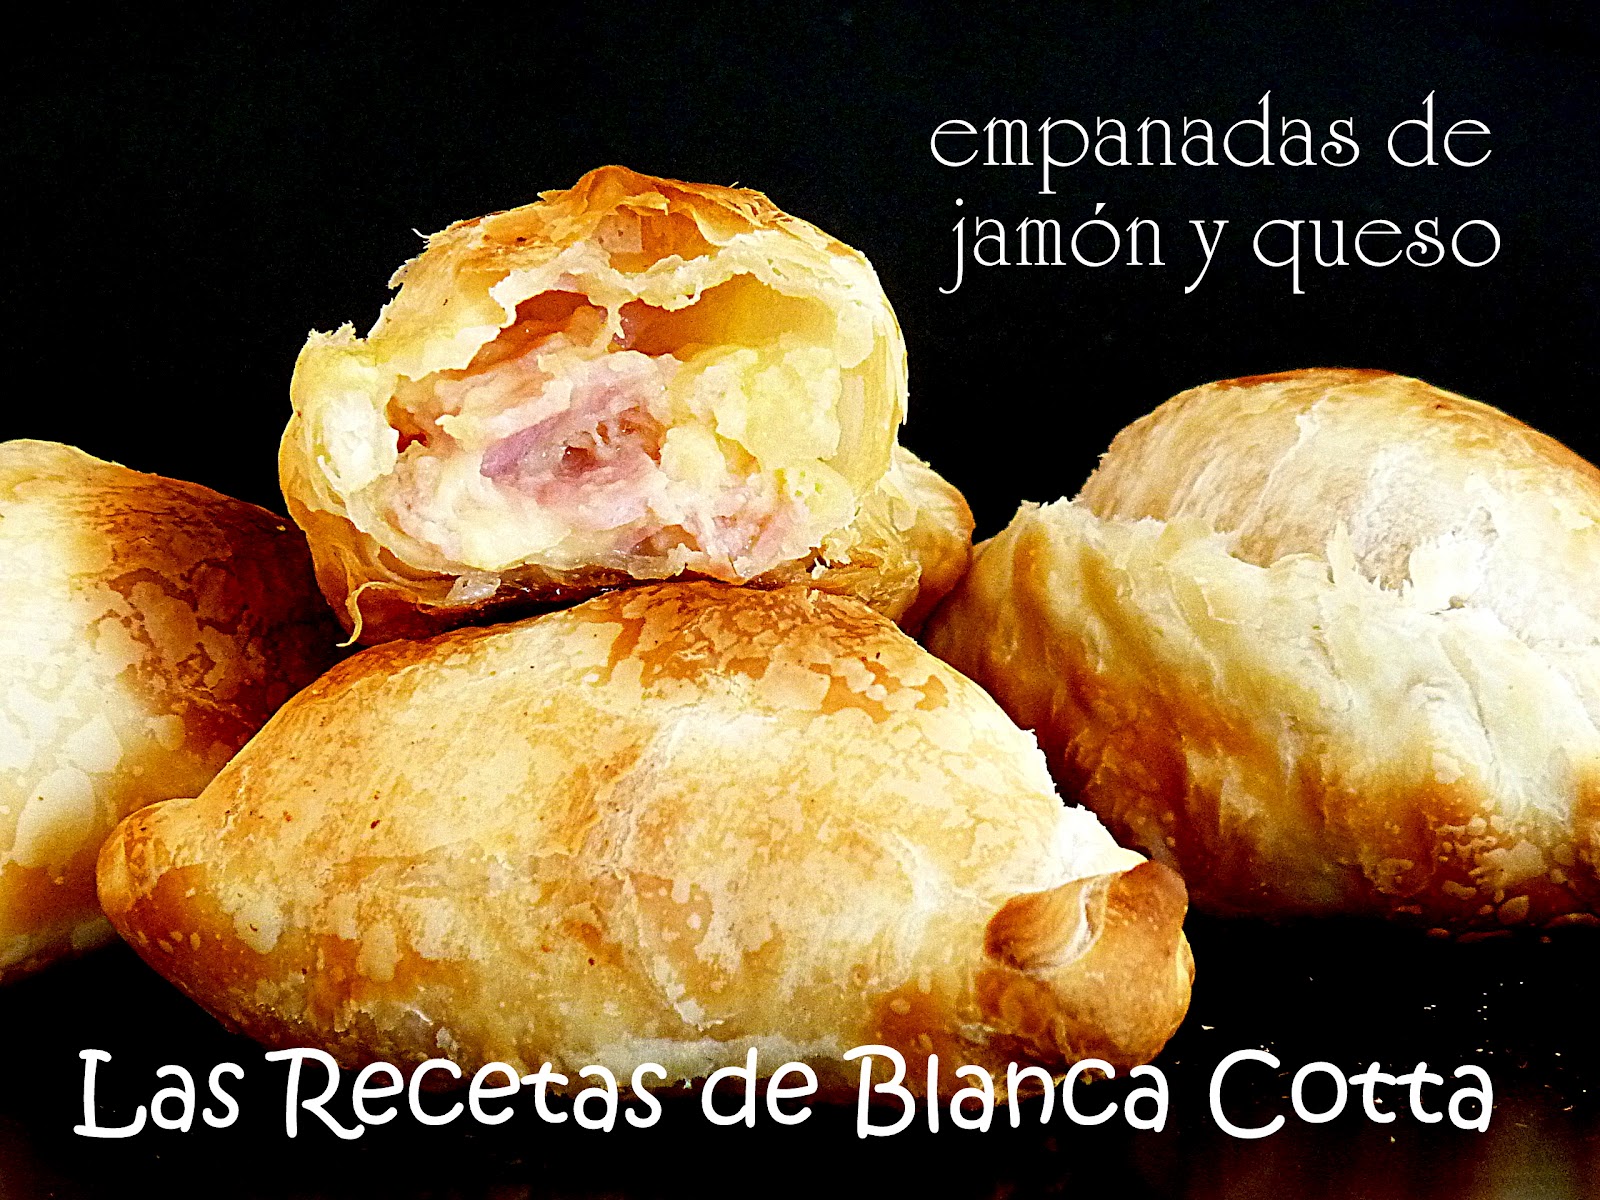 Blanca Cotta en nuestra cocina: empanadas de jamón y queso